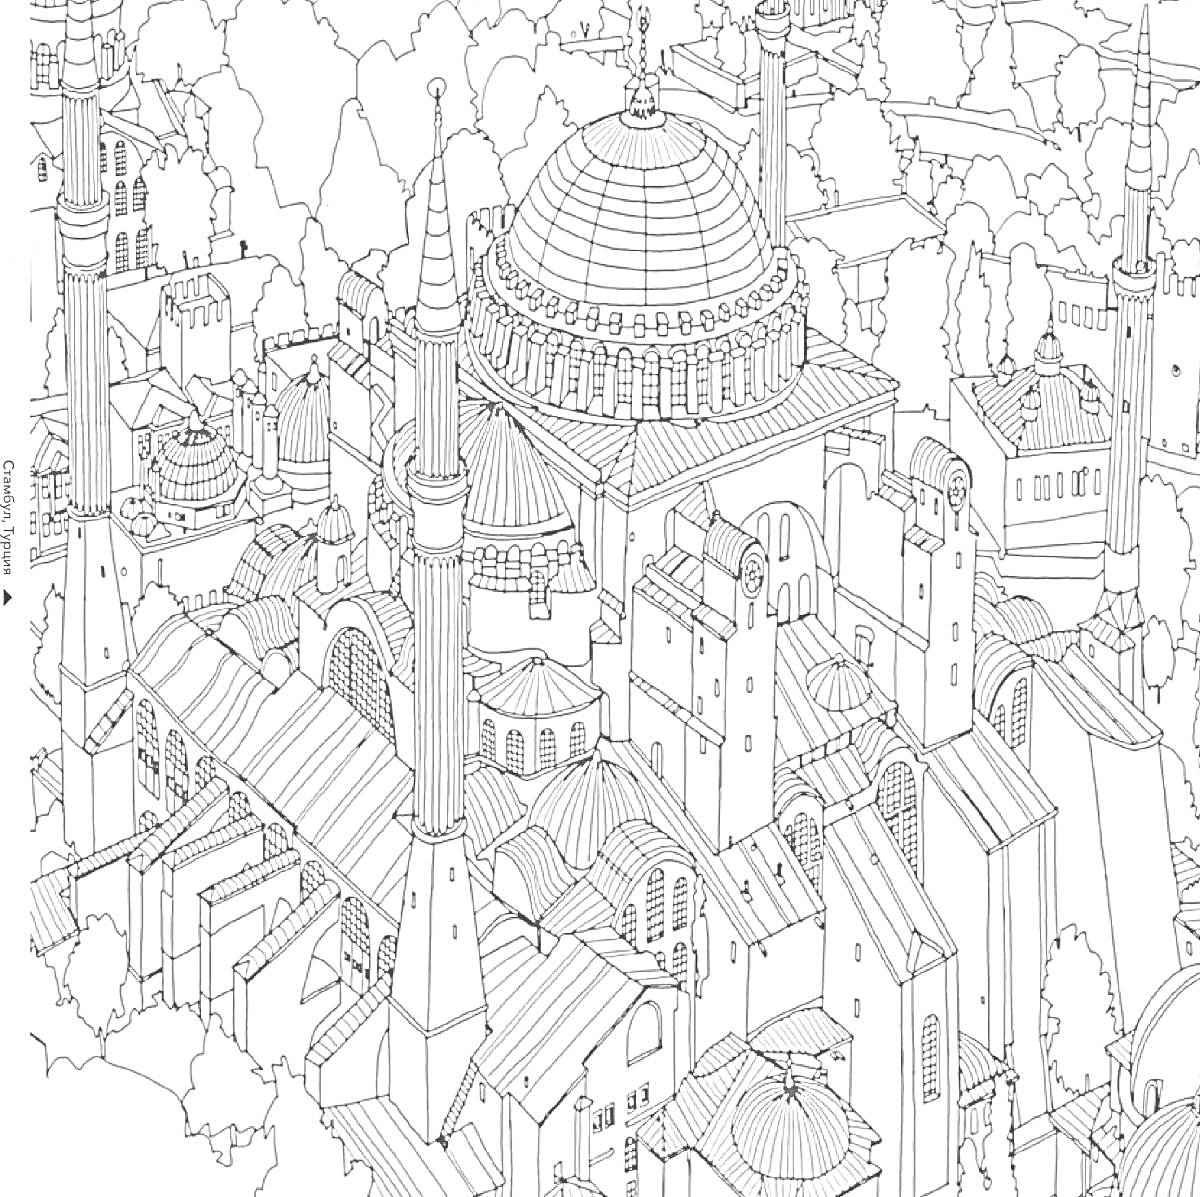 Раскраска Восточный город, крупные мечети с куполами и минаретами, окружающие здания и деревья